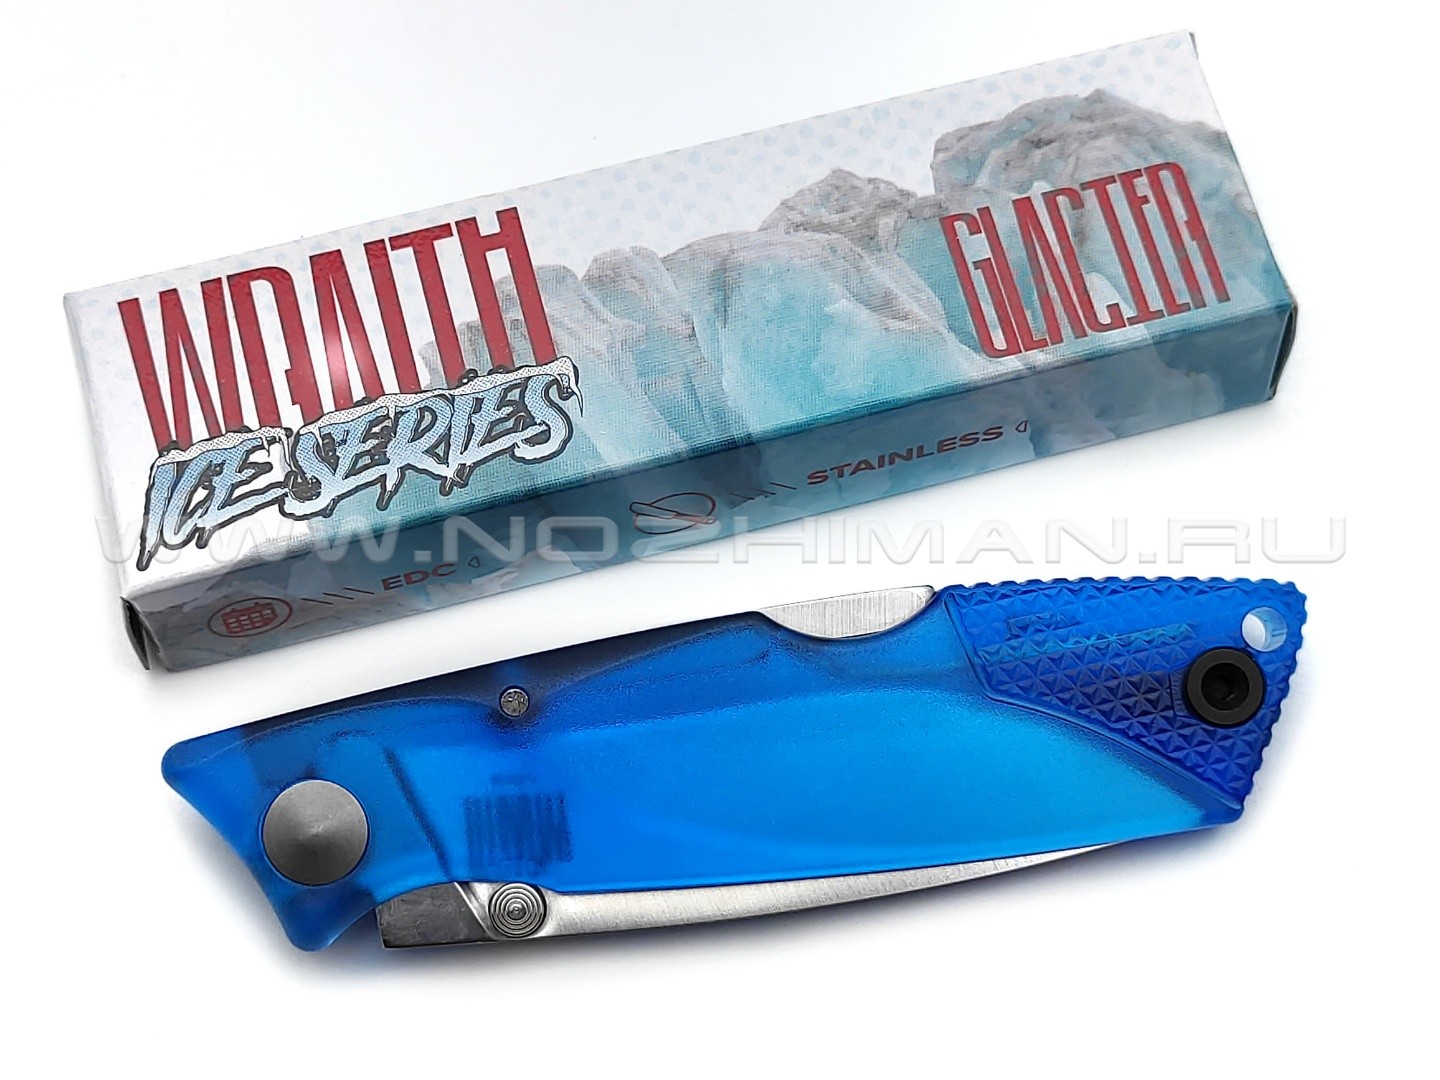 Нож Ontario Wraith Glacier Ice Series 8798SB сталь 1.4116, рукоять Plastic